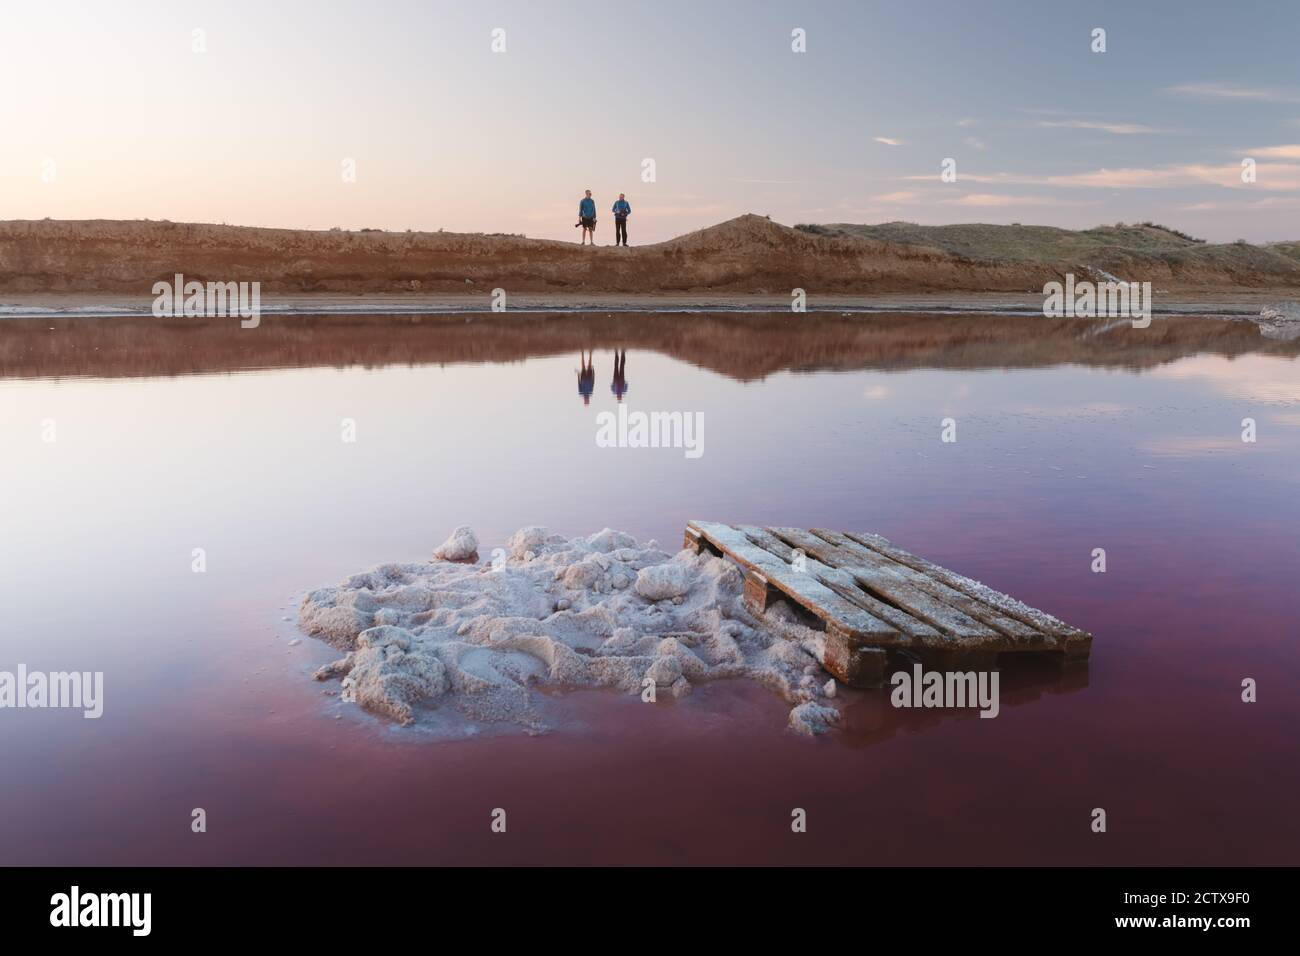 Cristalli di sale in acqua rosa lago di sale in Ucraina, Europa. Due fotografi sullo sfondo. Fotografia di paesaggio Foto Stock